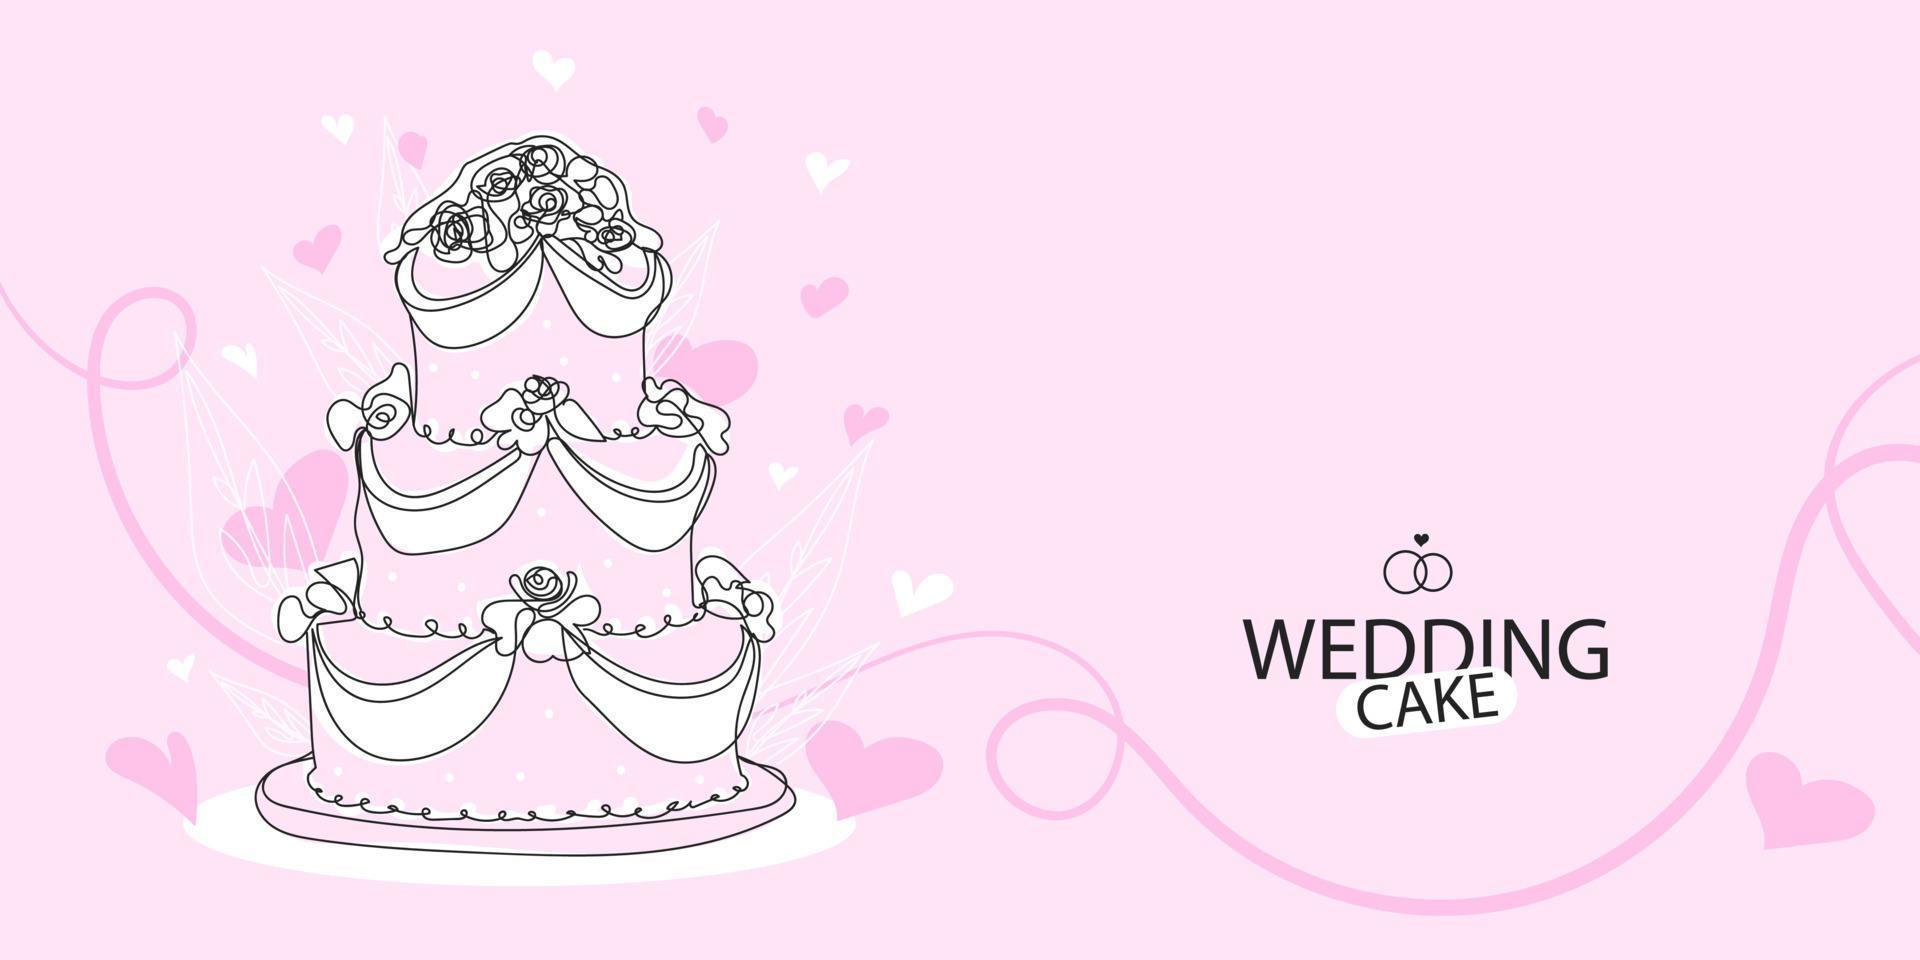 bolo de casamento com ilustração de contornos de rosa no estilo de desenhar uma linha contínua, design linear preto vetor